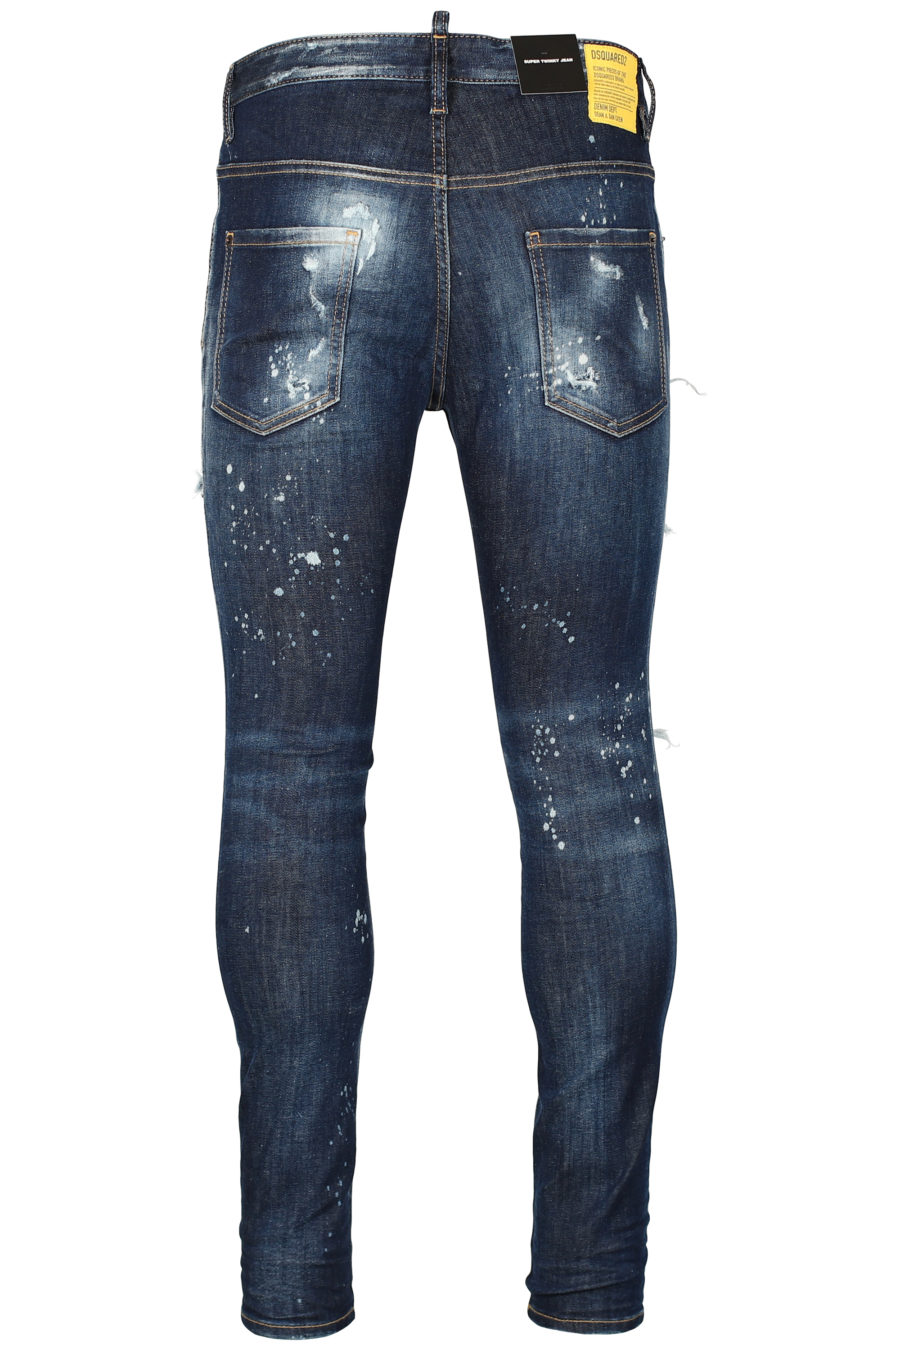 Pantalón vaquero "Super twinky jean" de color azul oscuro - IMG 2639